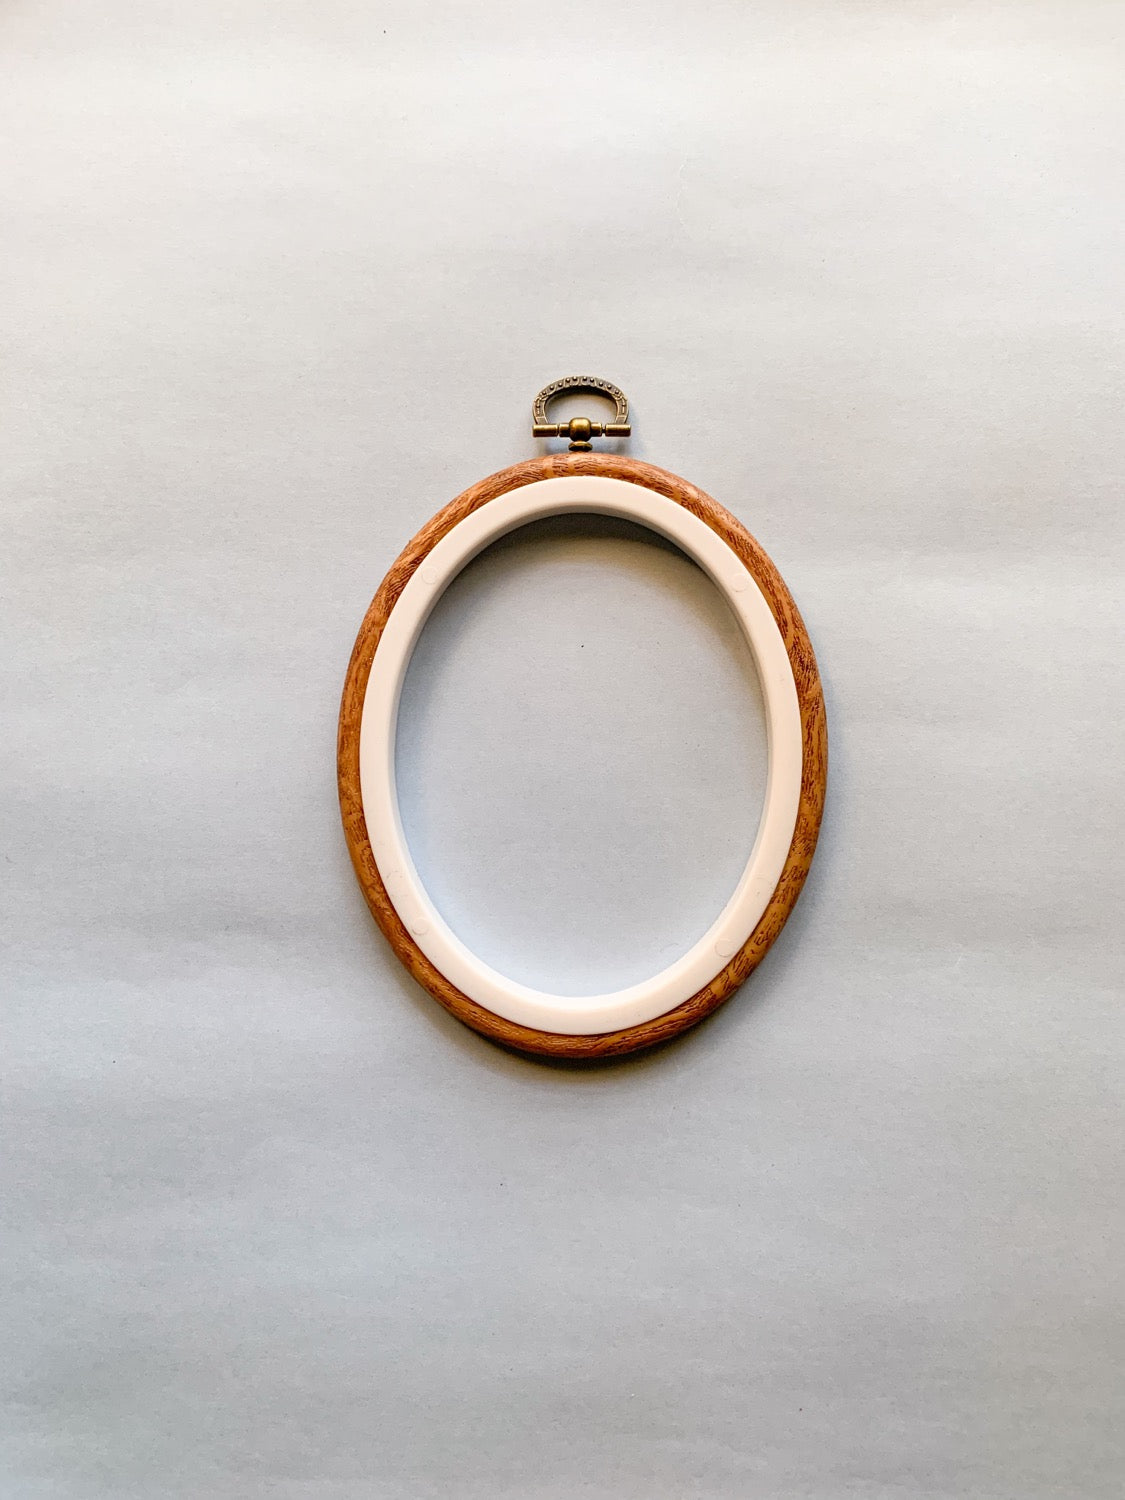 (Bulk Preorder) Oval Flexi Hoop - Small x 10 pcs